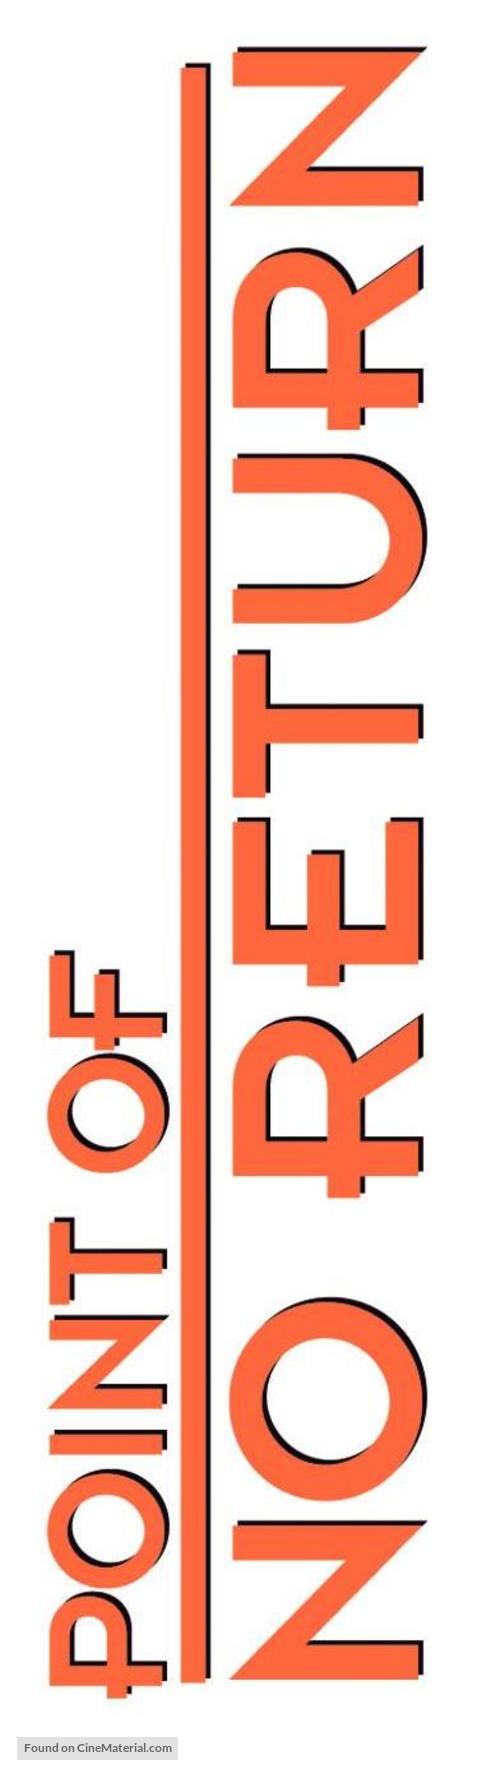 Point of No Return - Logo